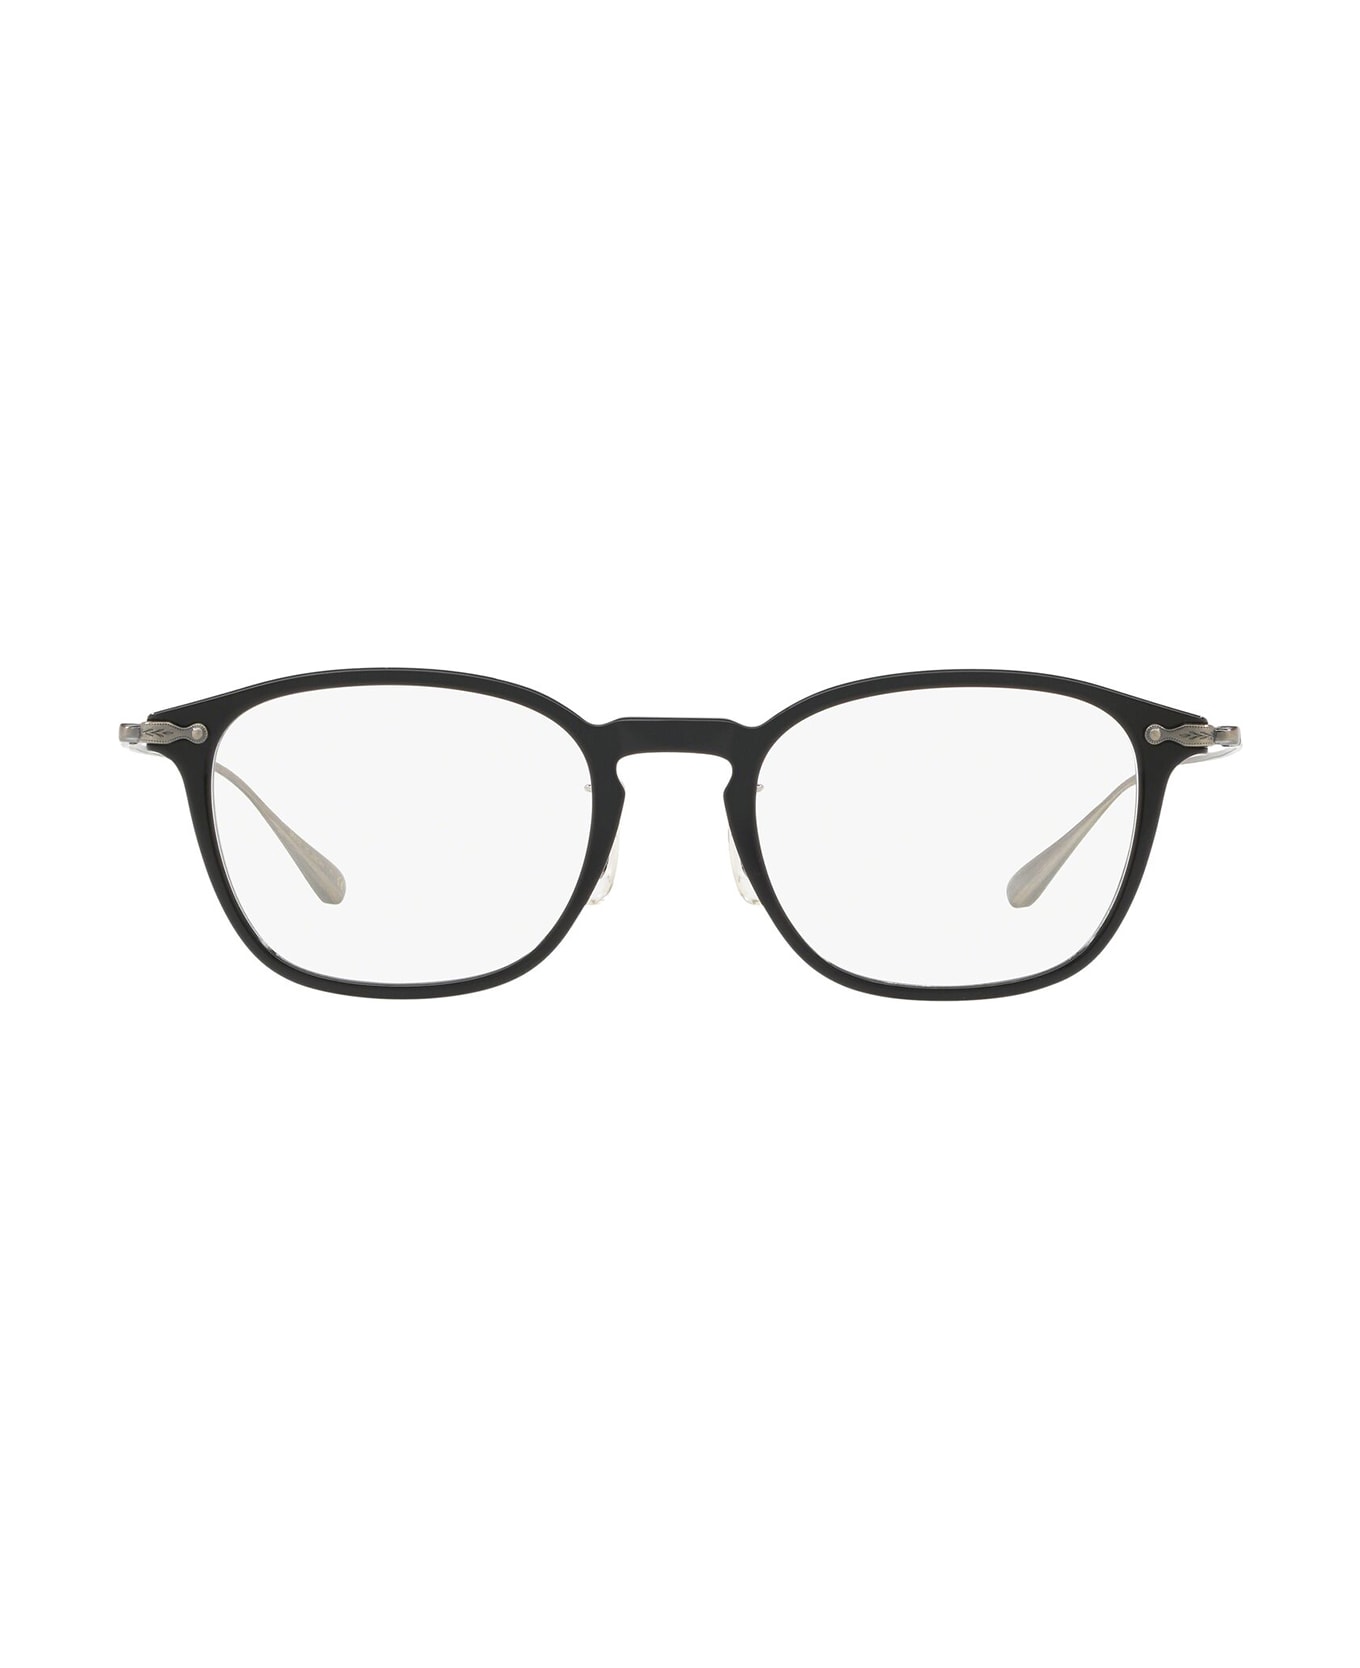 Oliver Peoples Ov5371d Black Glasses - Black